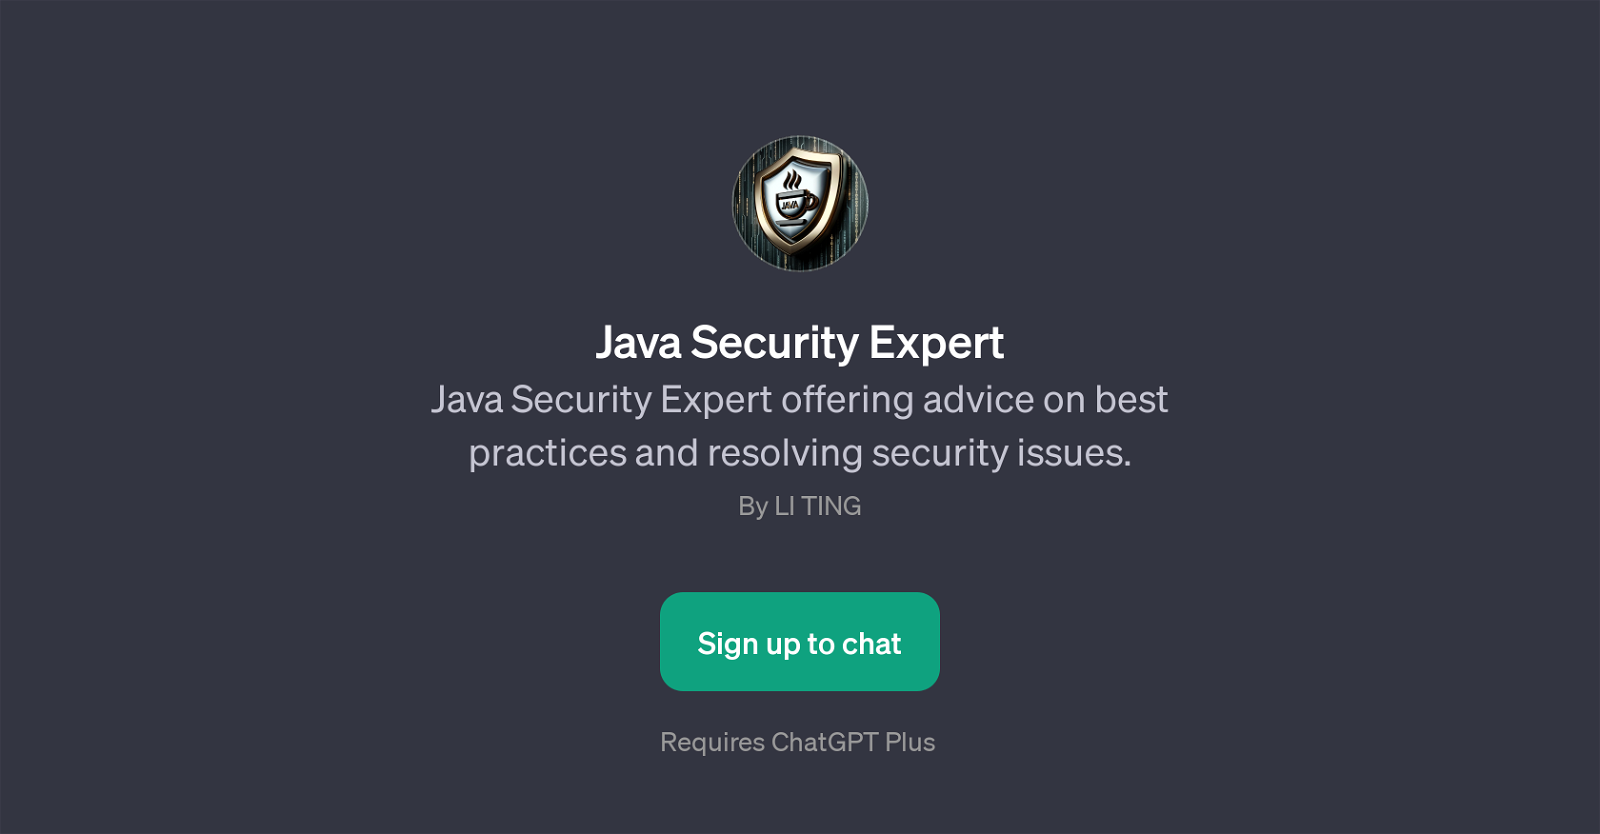 Java Security Expert website